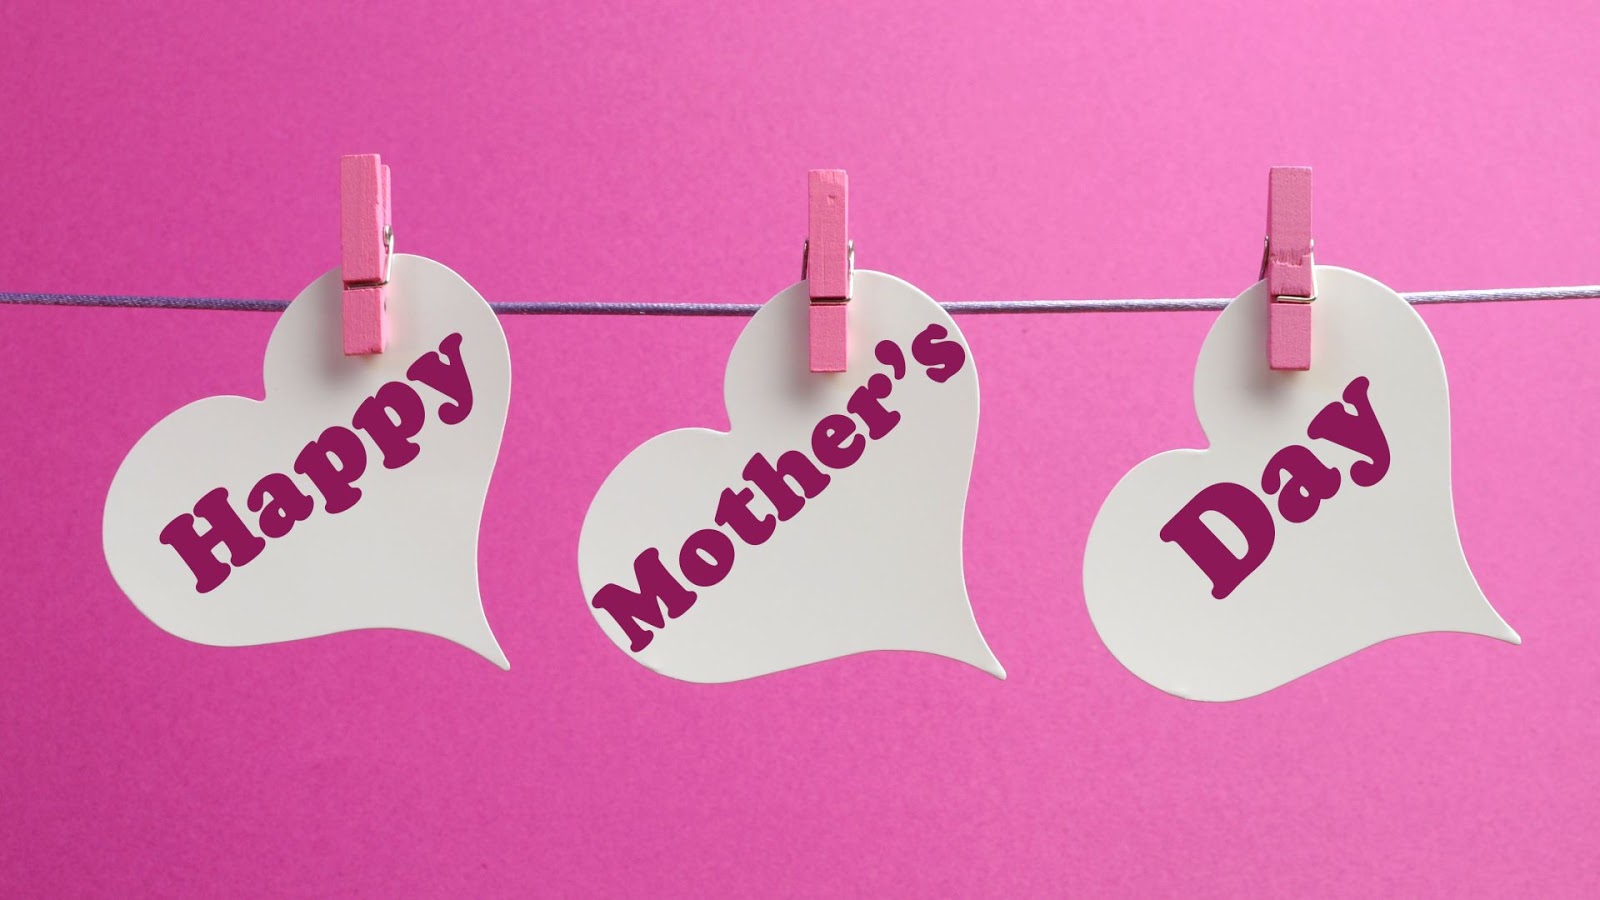 FREE Mothers Day Background - Image Download in PDF, Illustrator,  Photoshop, PPT, Google Slides, EPS, SVG, JPG, PNG, JPEG | Template.net